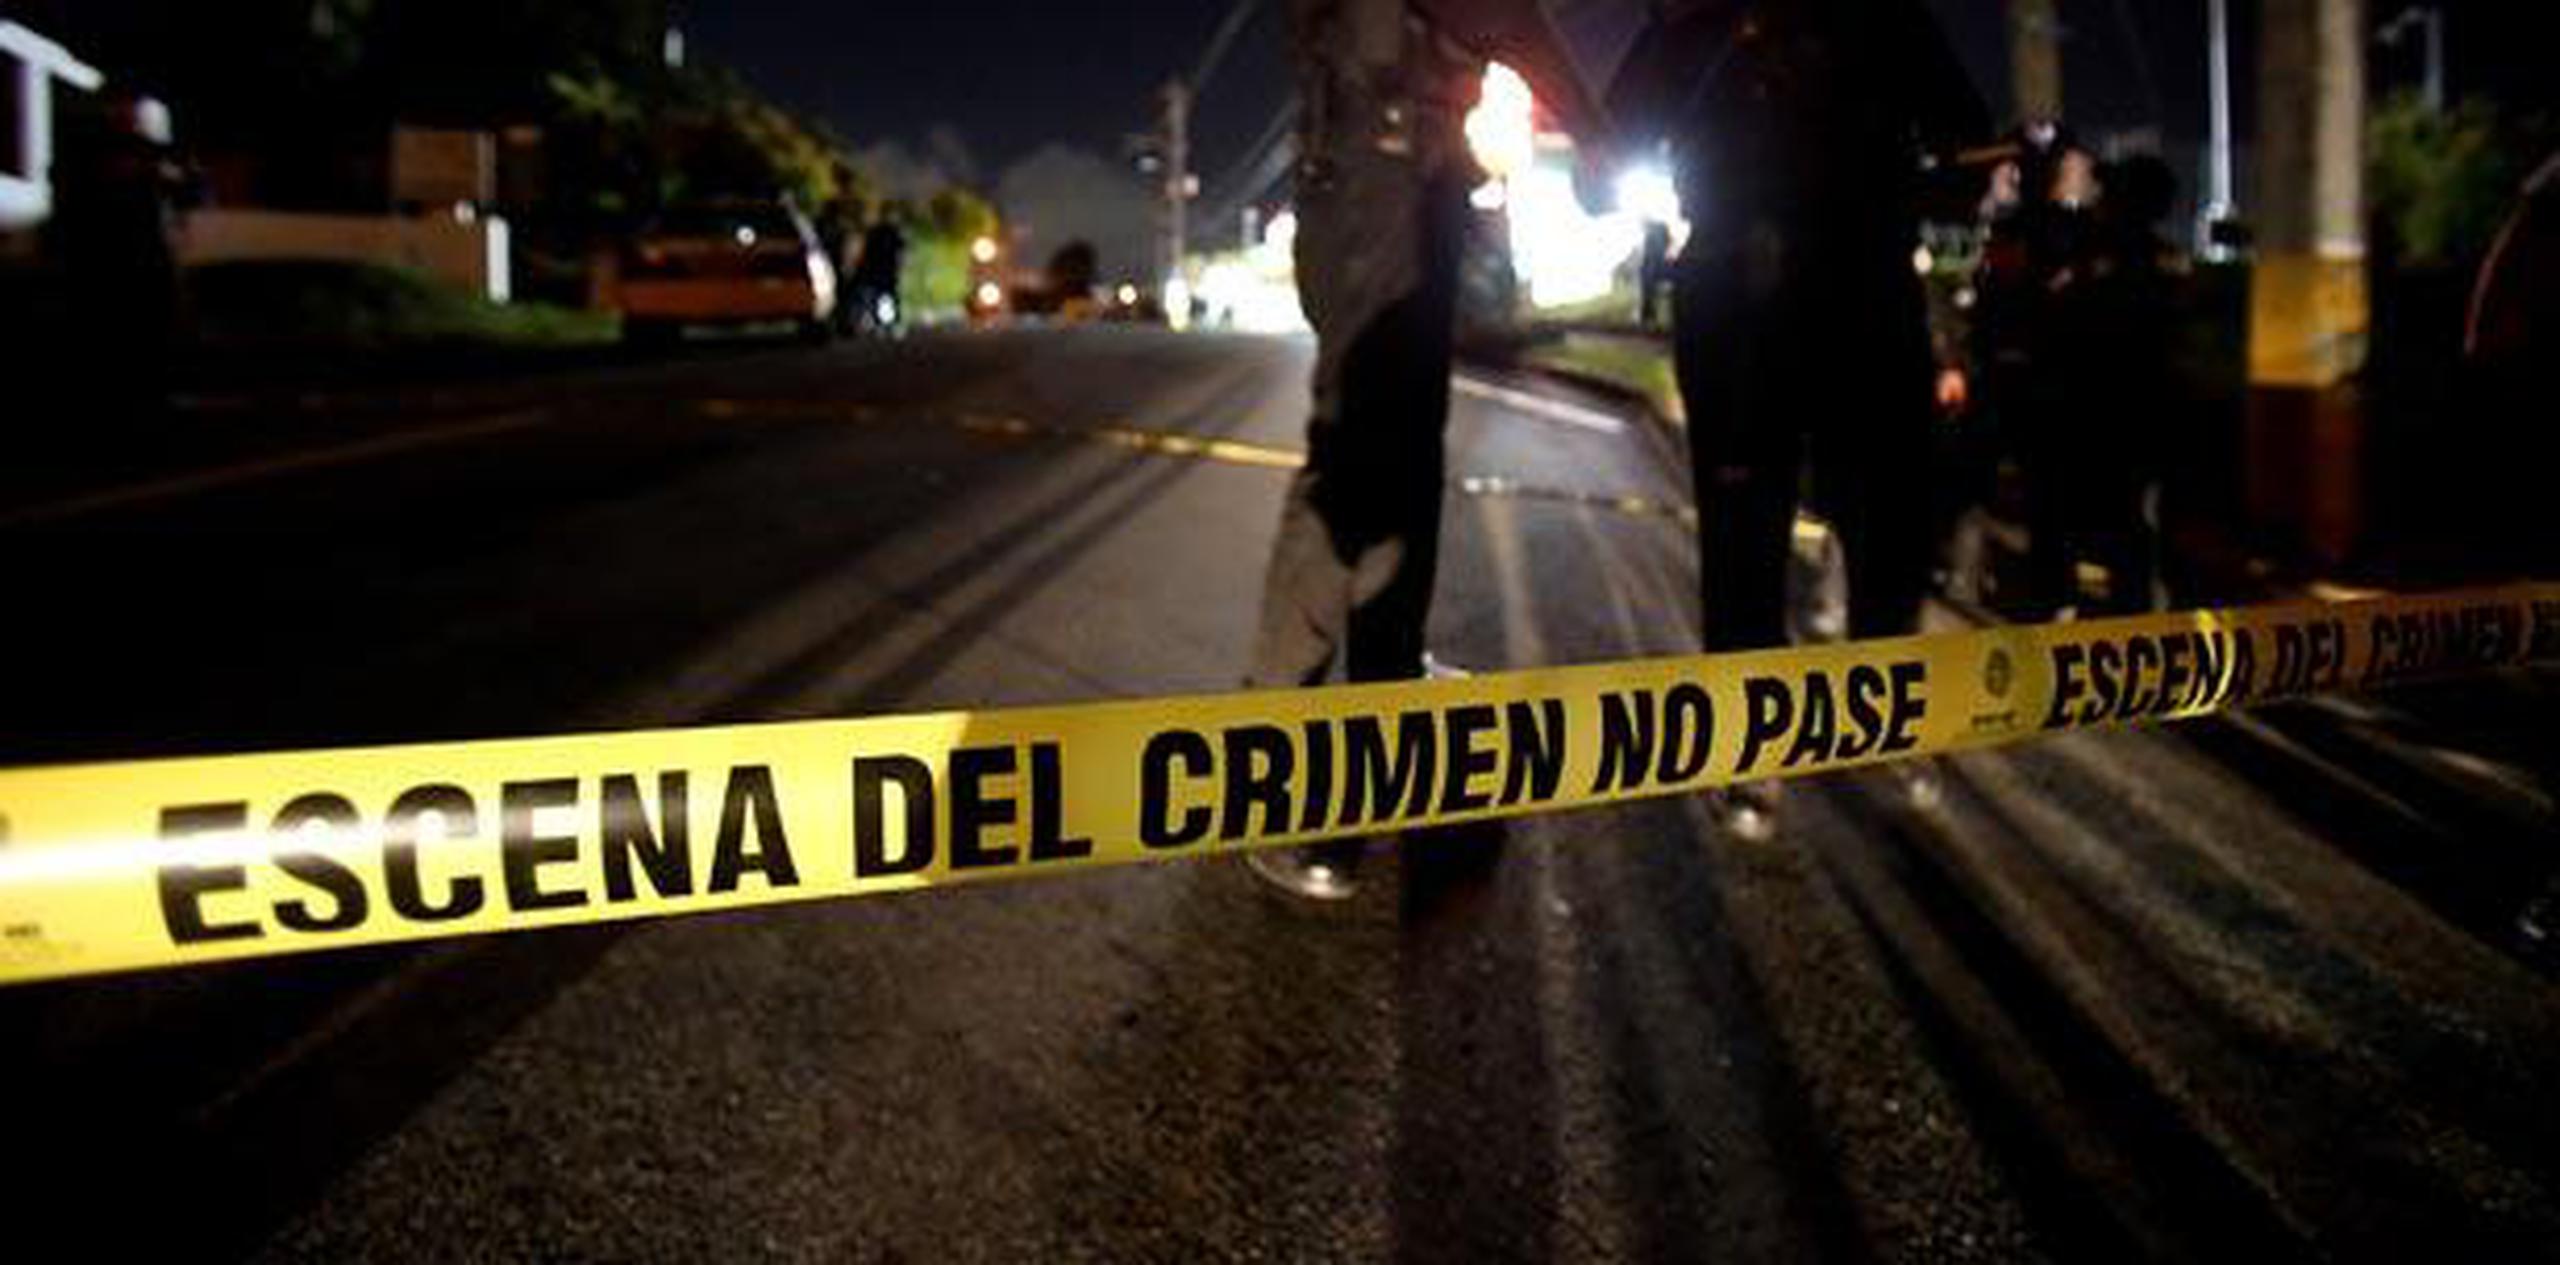 En lo que va de año en el área policíaca de San Juan han ocurrido 25 asesinatos, dos menos que los reportados a esta fecha en el 2017. (Archivo)